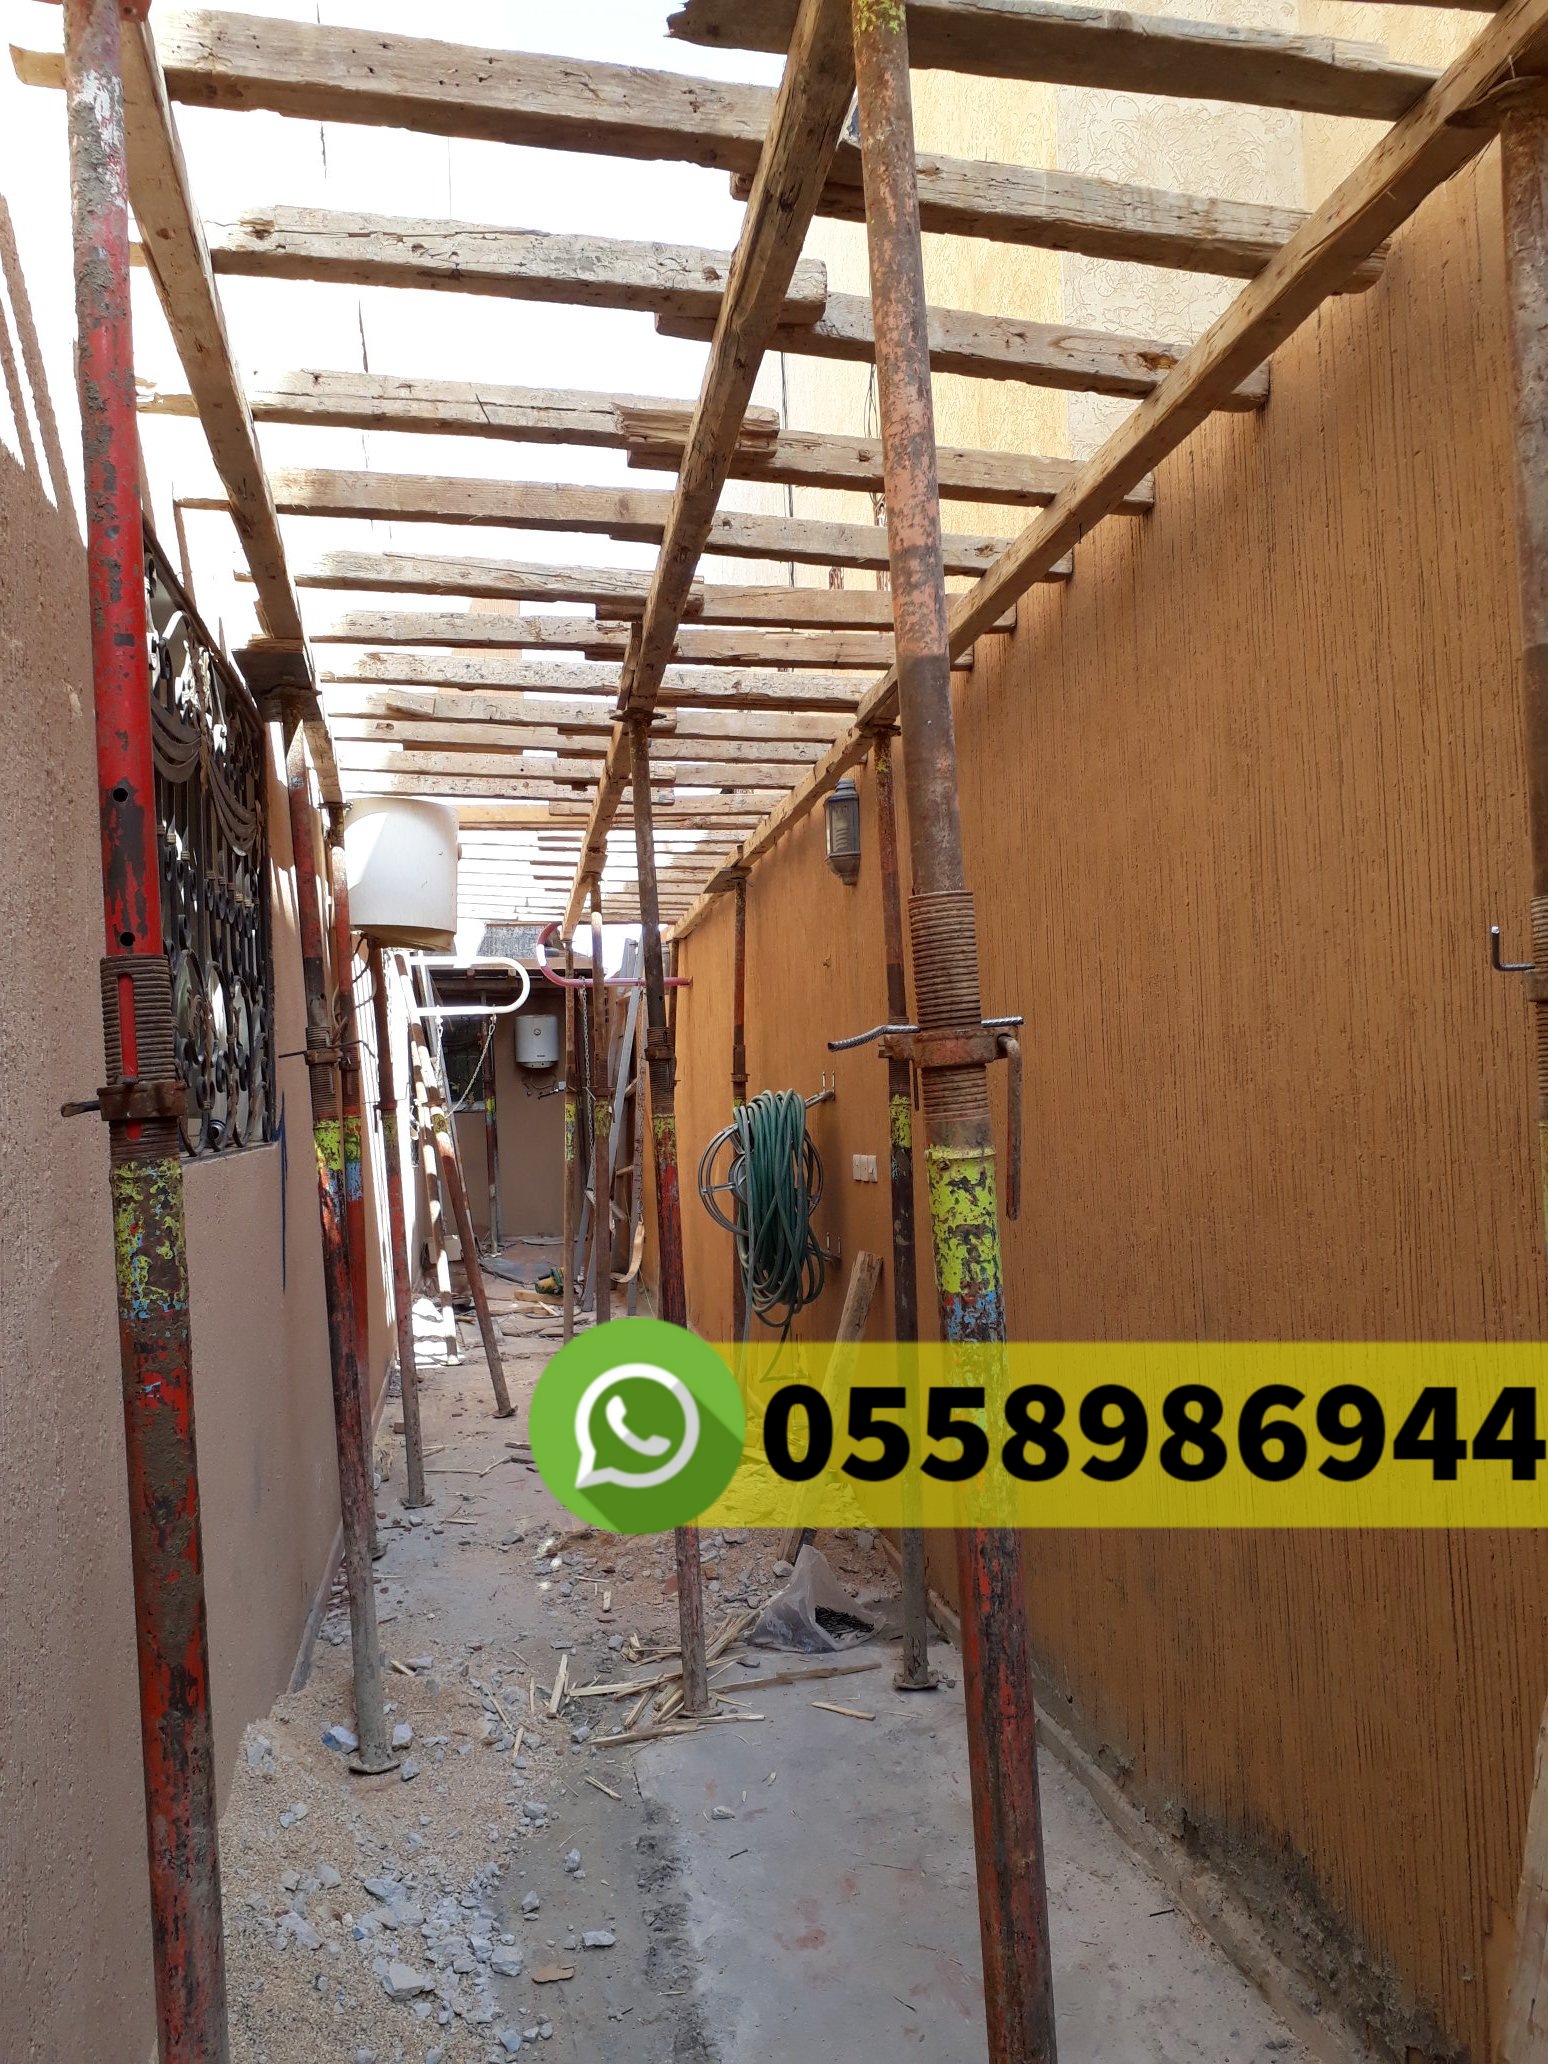 مقاول معماري في ابحر شمالية جدة جوال 0558986944